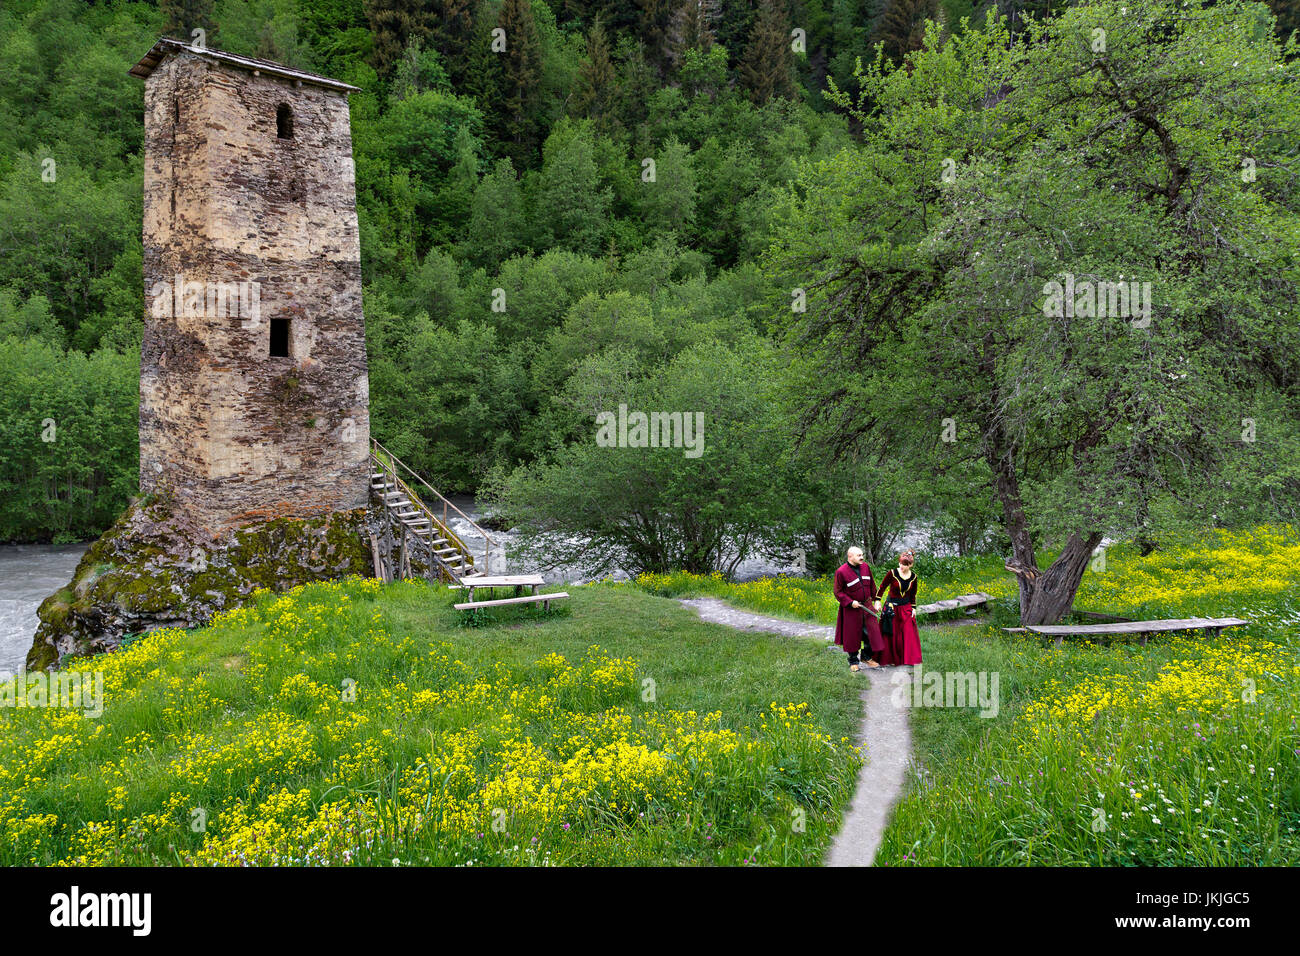 Georgische Mann und Frau in Trachten in der Nähe von einem mittelalterlichen Turm, Georgia. Stockfoto